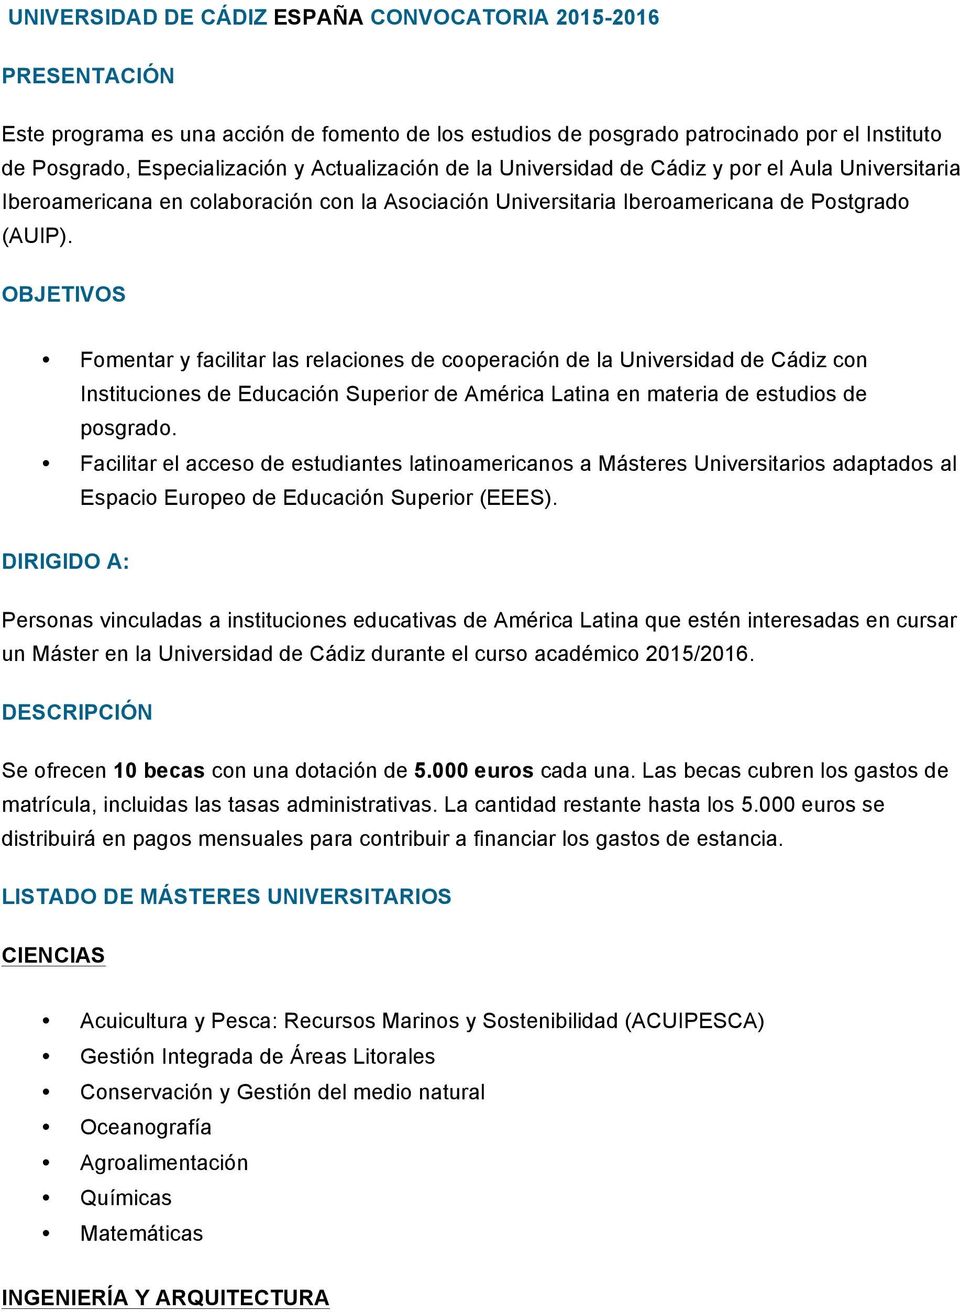 OBJETIVOS Fomentar y facilitar las relaciones de cooperación de la Universidad de Cádiz con Instituciones de Educación Superior de América Latina en materia de estudios de posgrado.